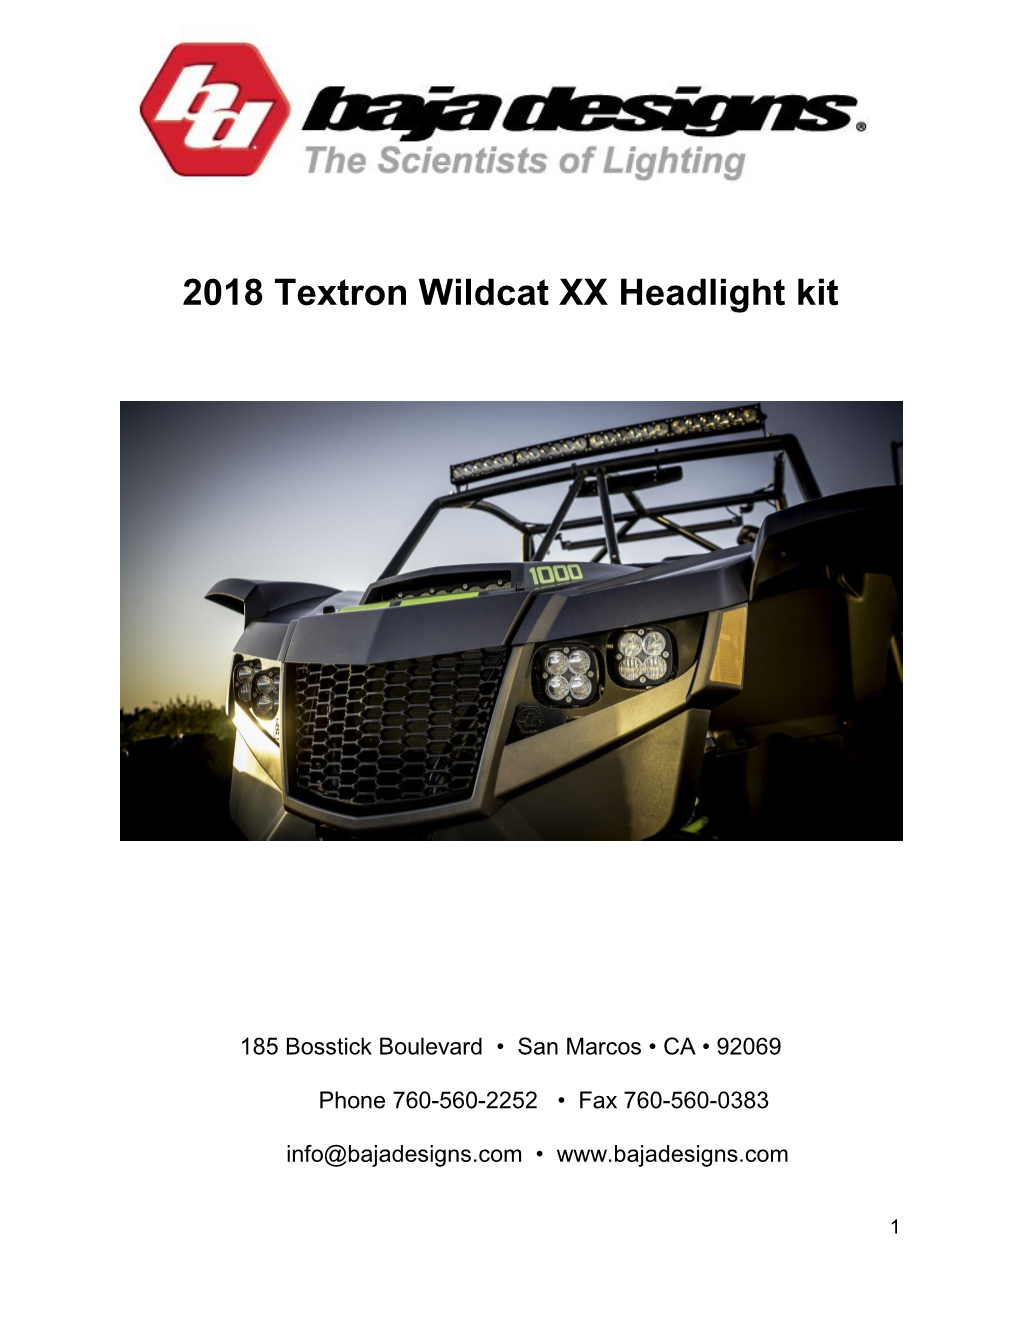 2018 Textron Wildcat XX Headlight Kit